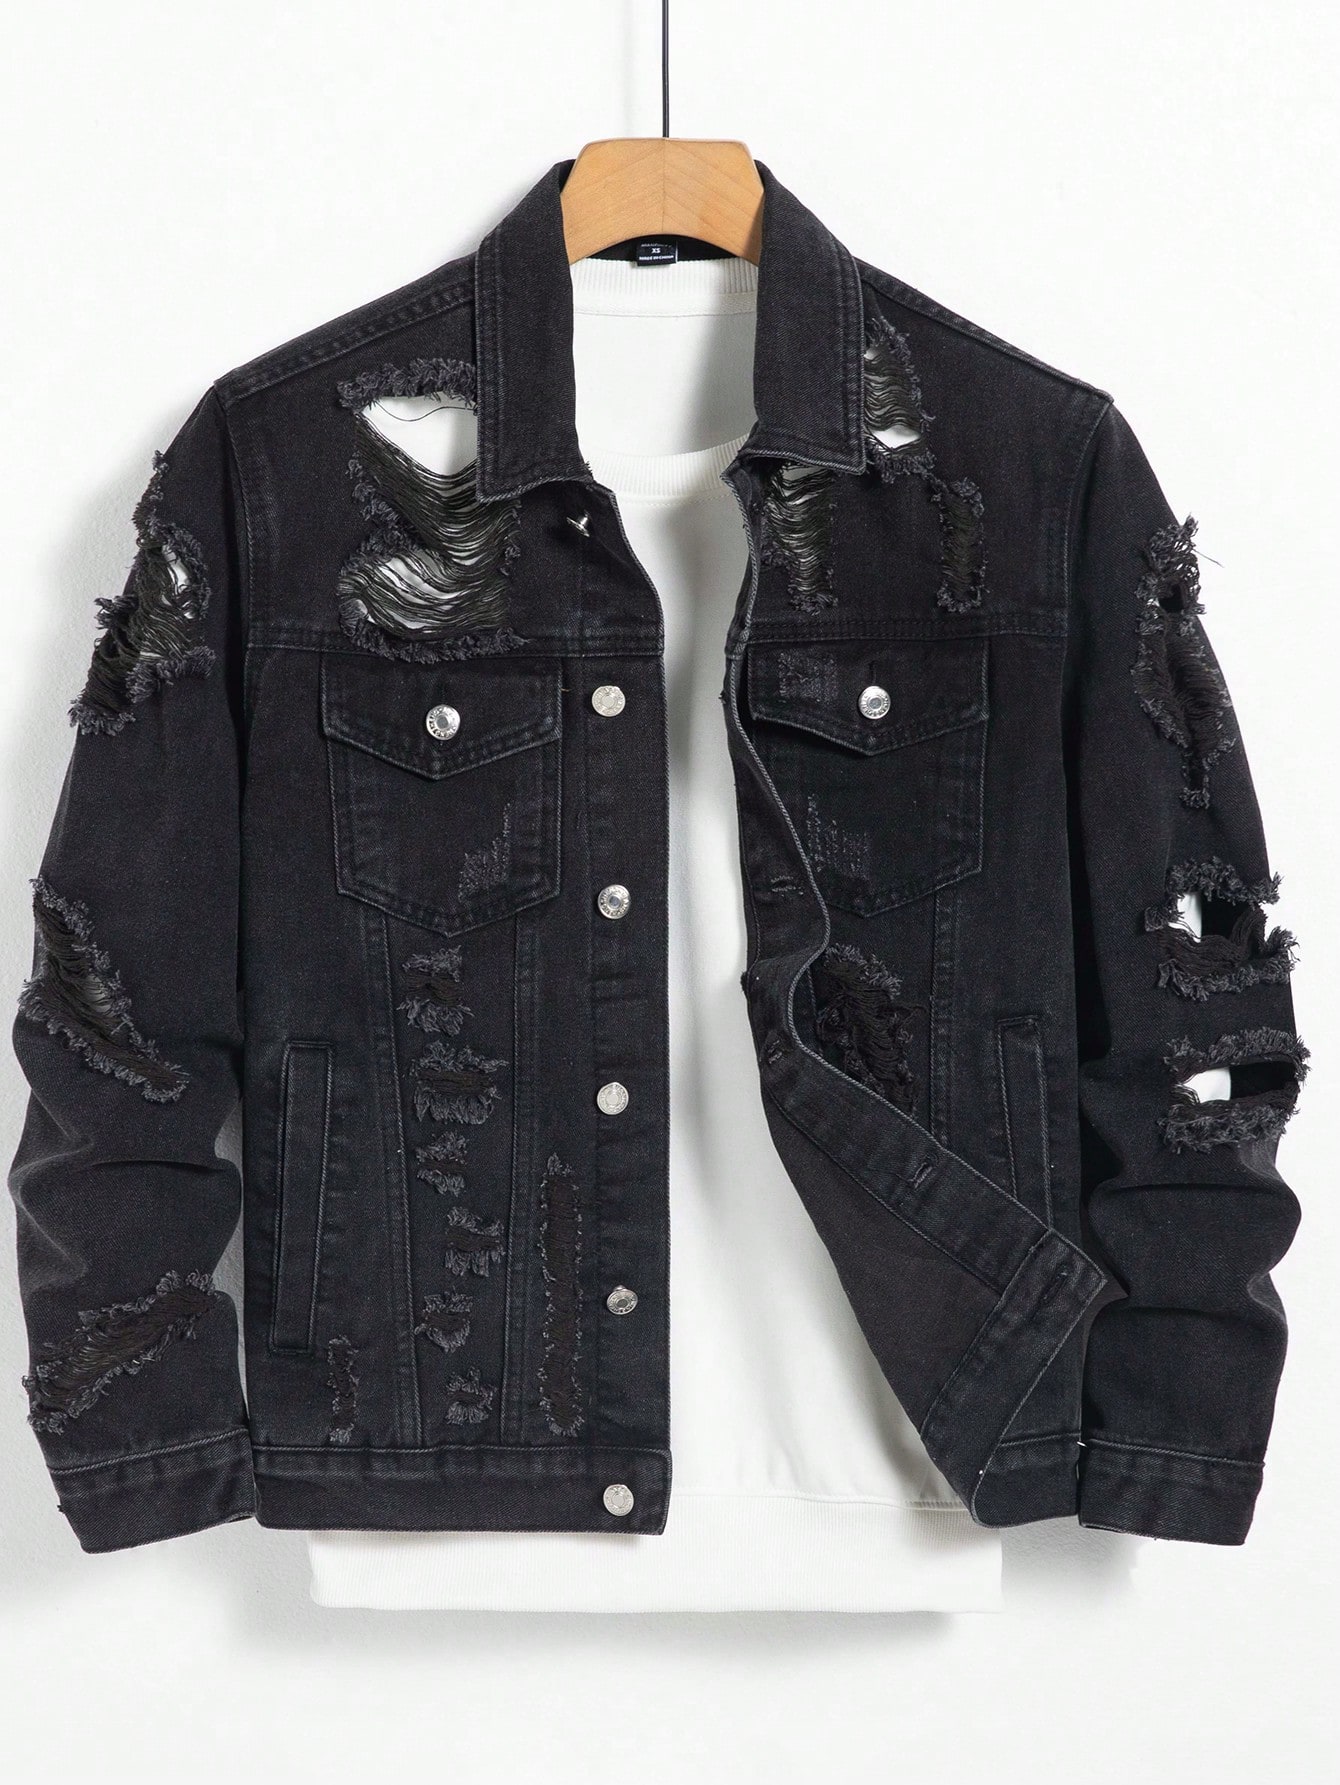 цена Мужская джинсовая куртка с потертостями на пуговицах спереди Manfinity EMRG, черный